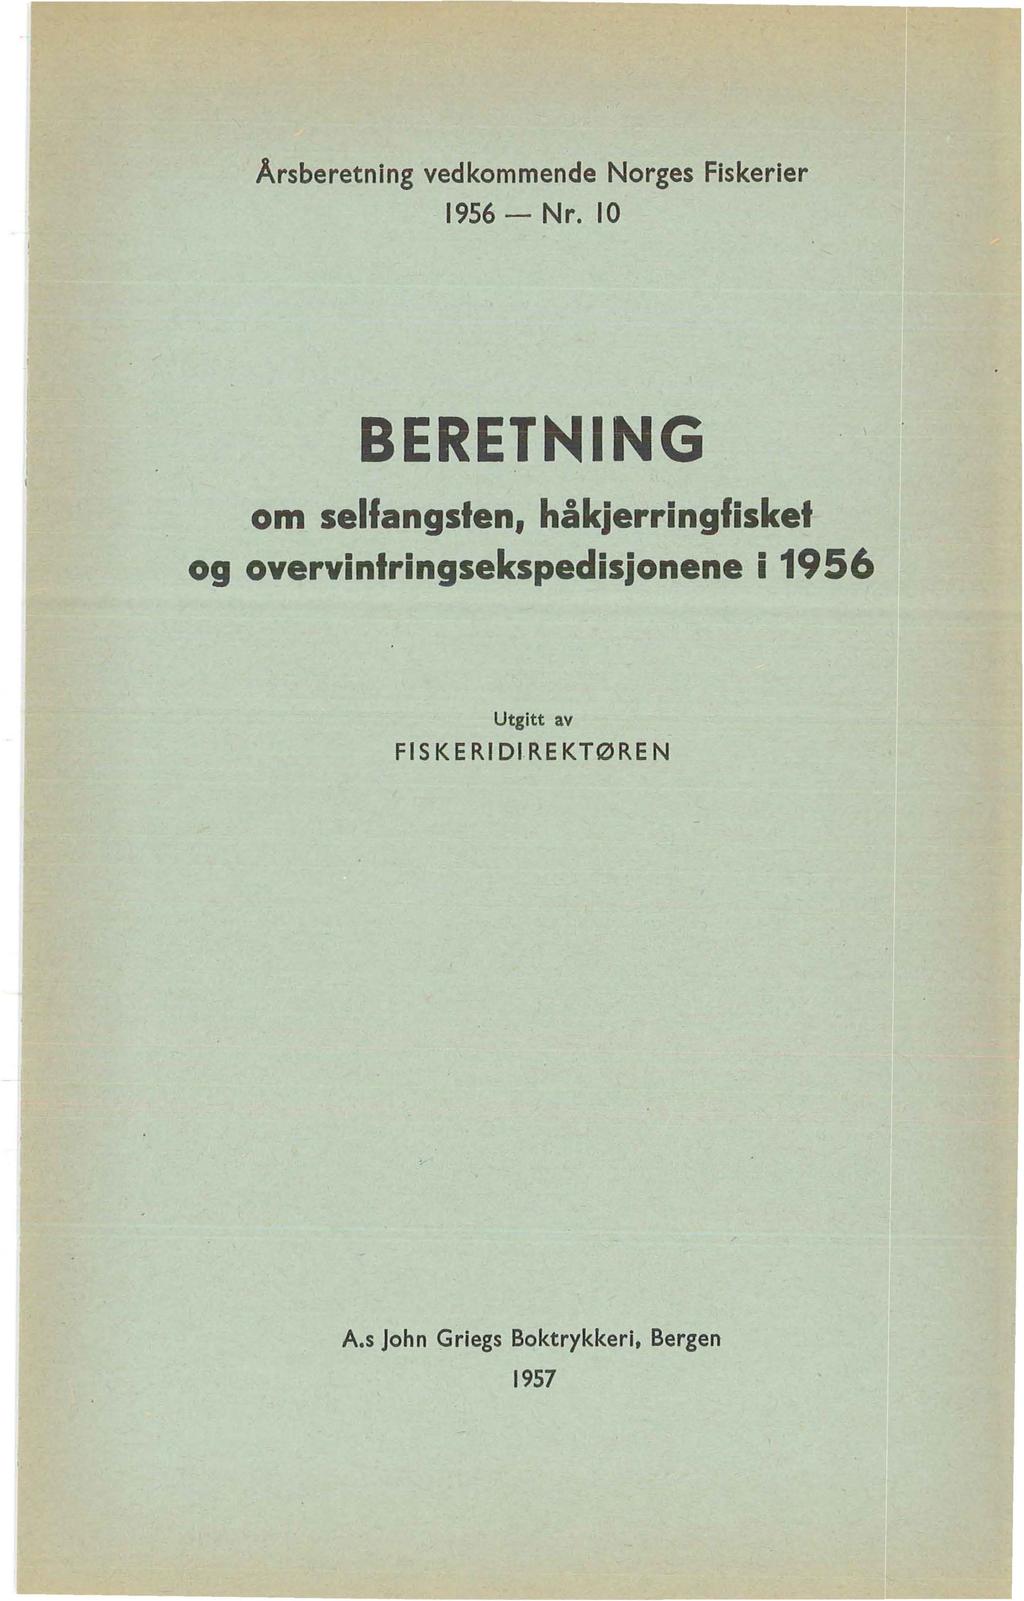 Årsberetning vedkommende Norges Fiskerier 1956- Nr.